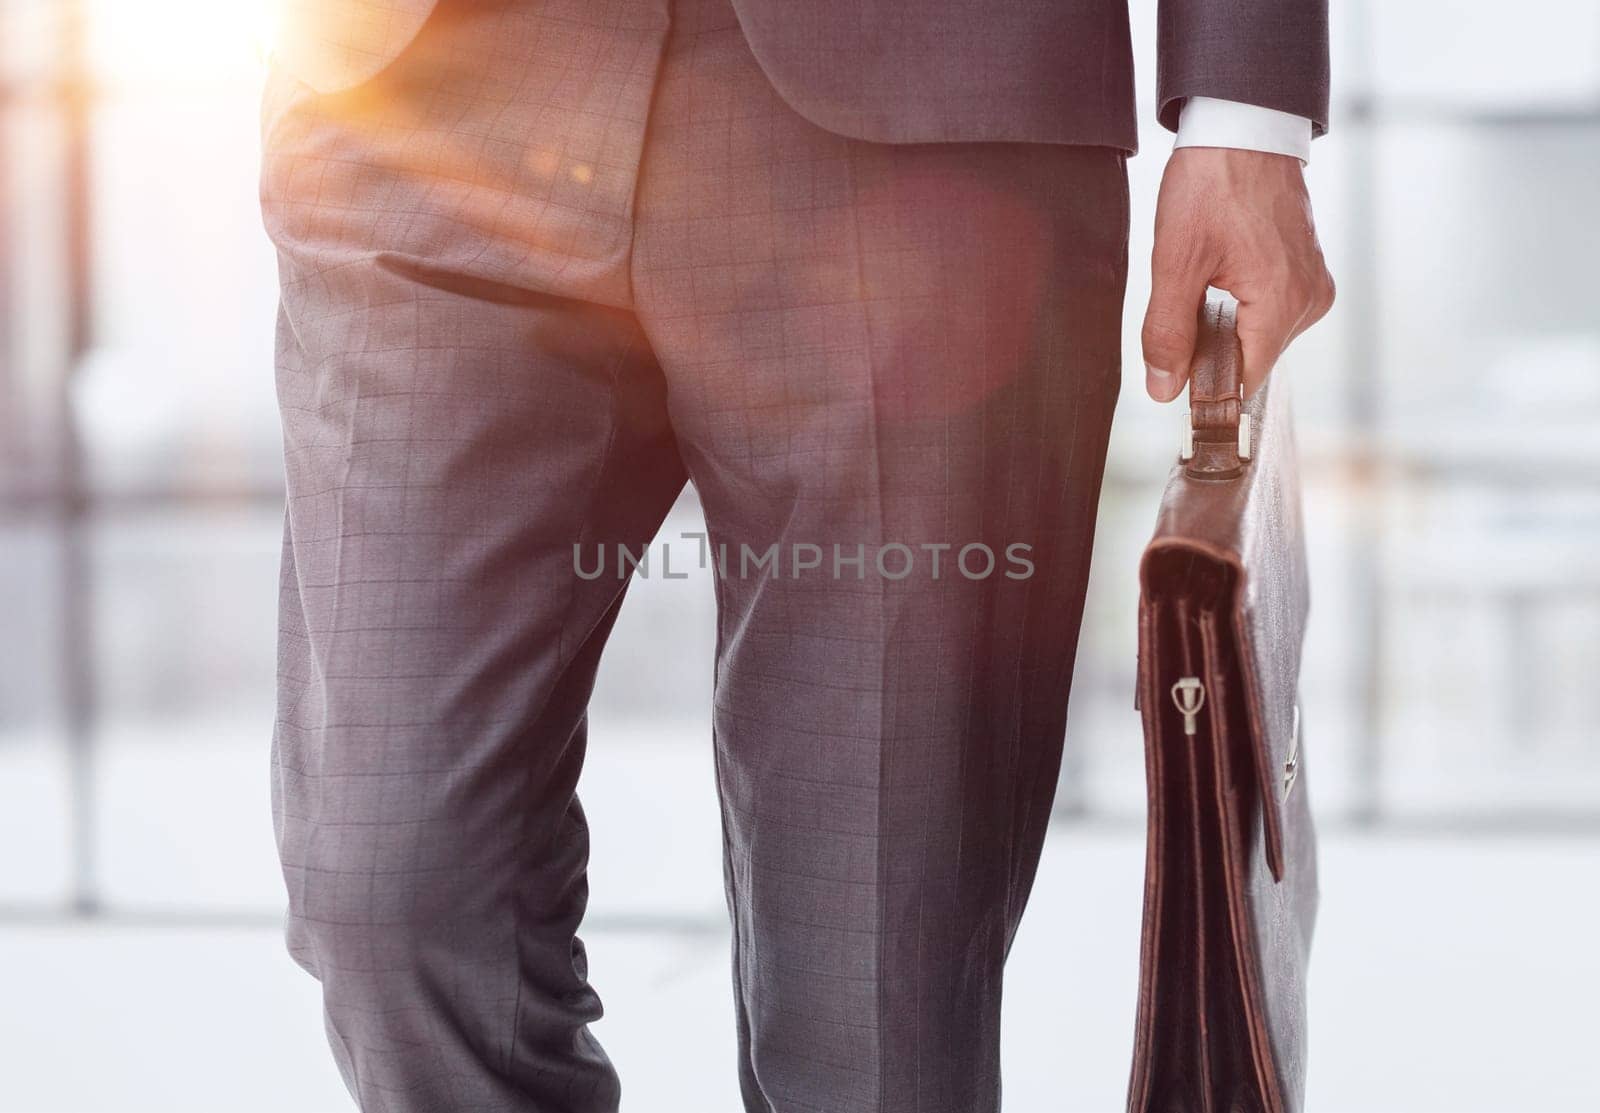 modern businessman with briefcase in modern office, focus on briefcase